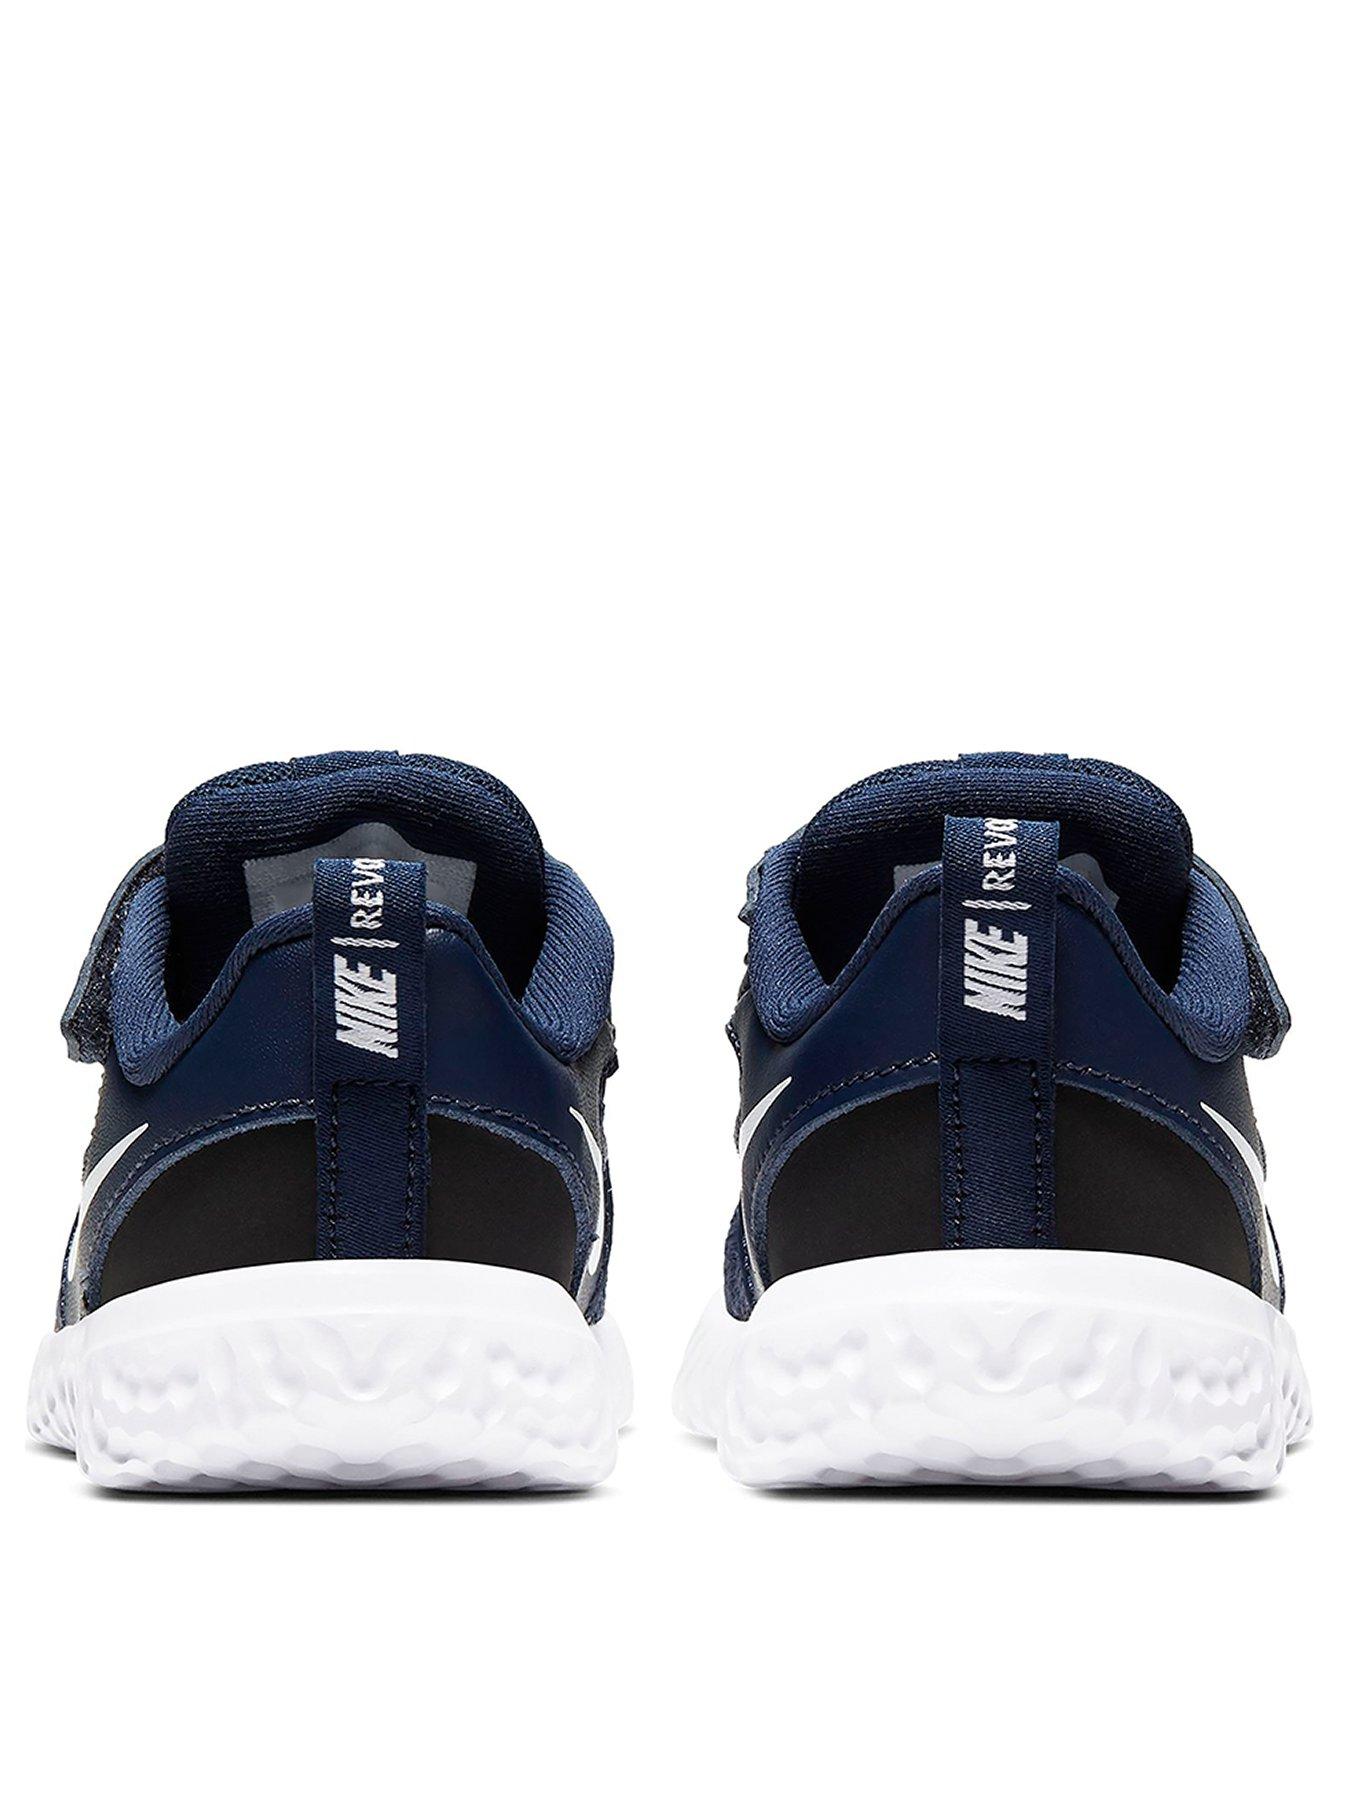 Nike Revolution 5 Infant Trainer - Navy 